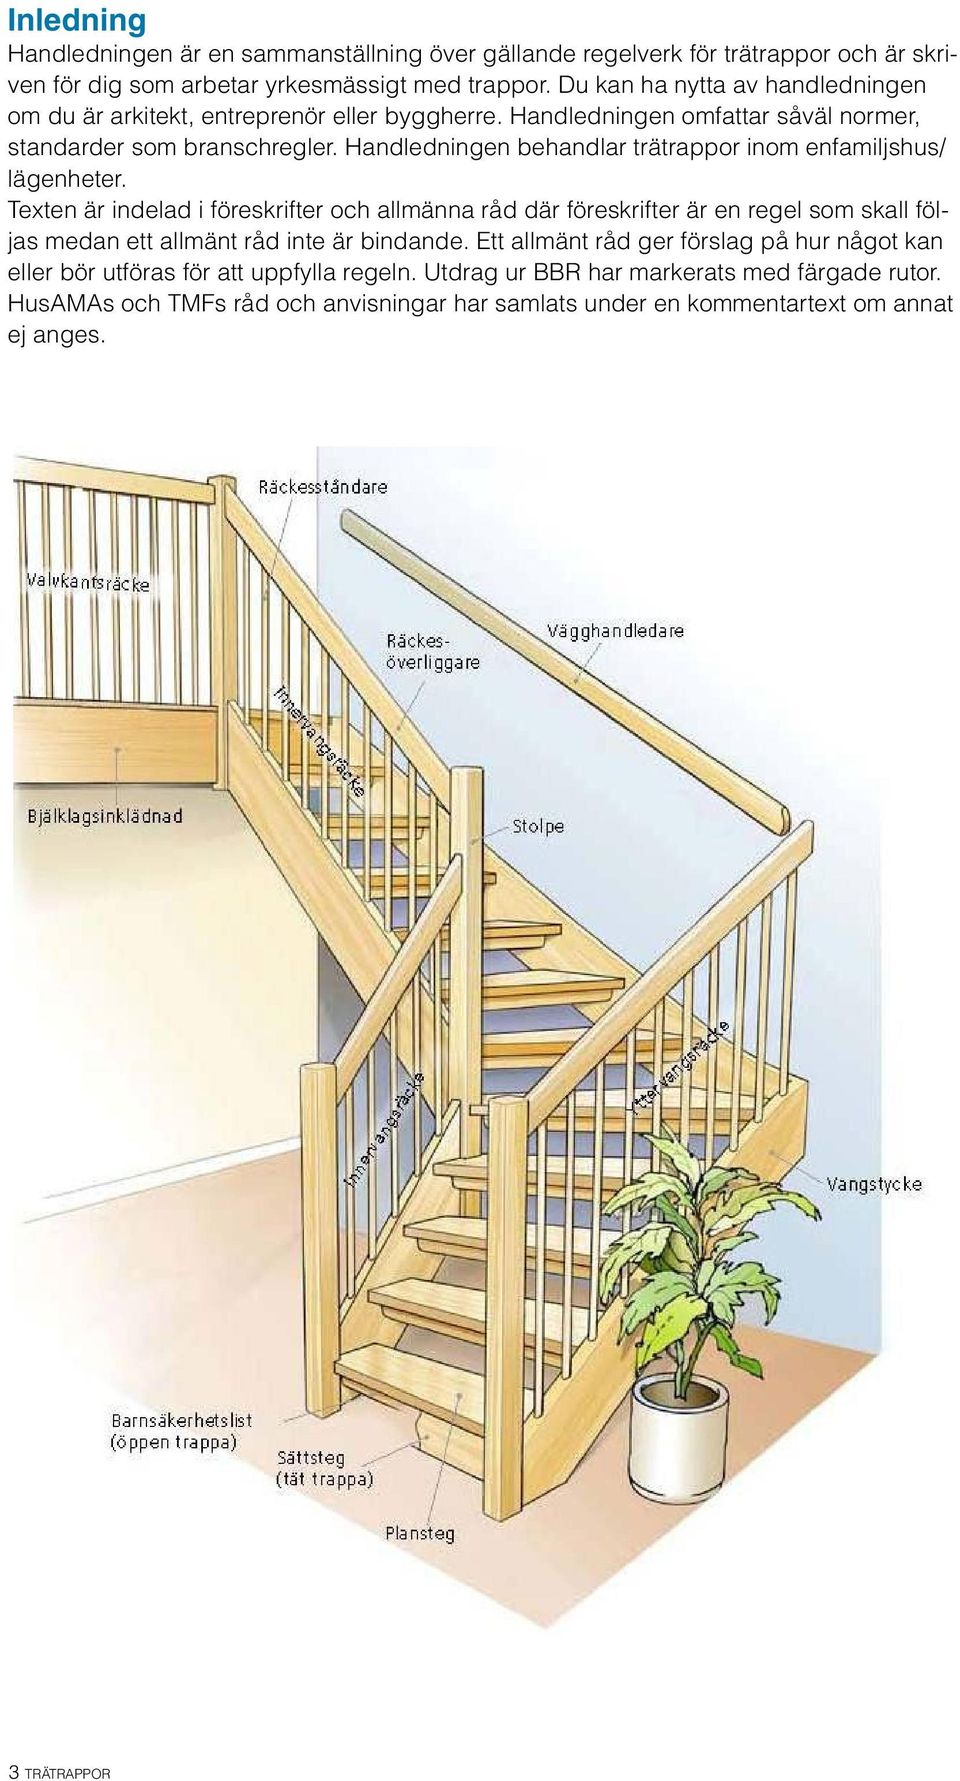 Handledningen behandlar trätrappor inom enfamiljshus/ lägenheter.